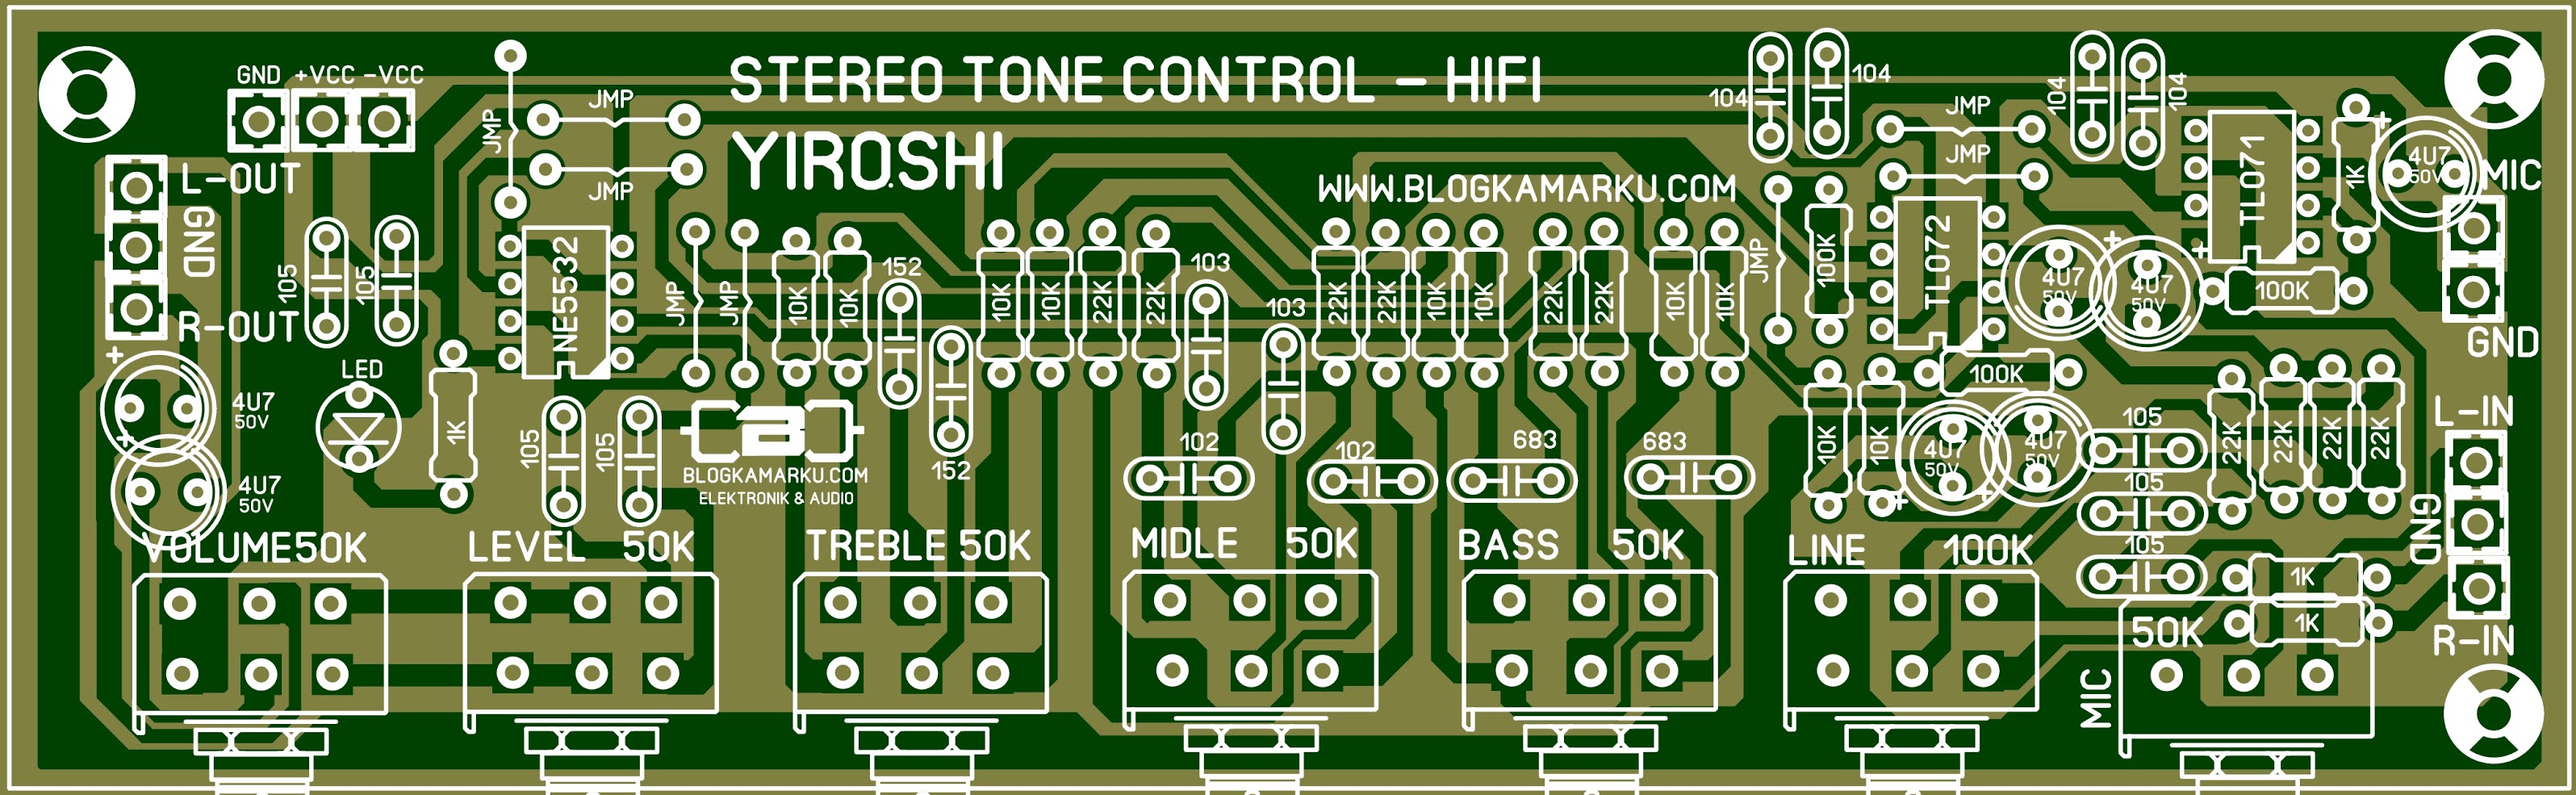 Tone control. Stereo Tone Control. Tone Control schematic. Tone Control circuits HIFI stereo. Tone Control Apex Audio untuk Amplifier.